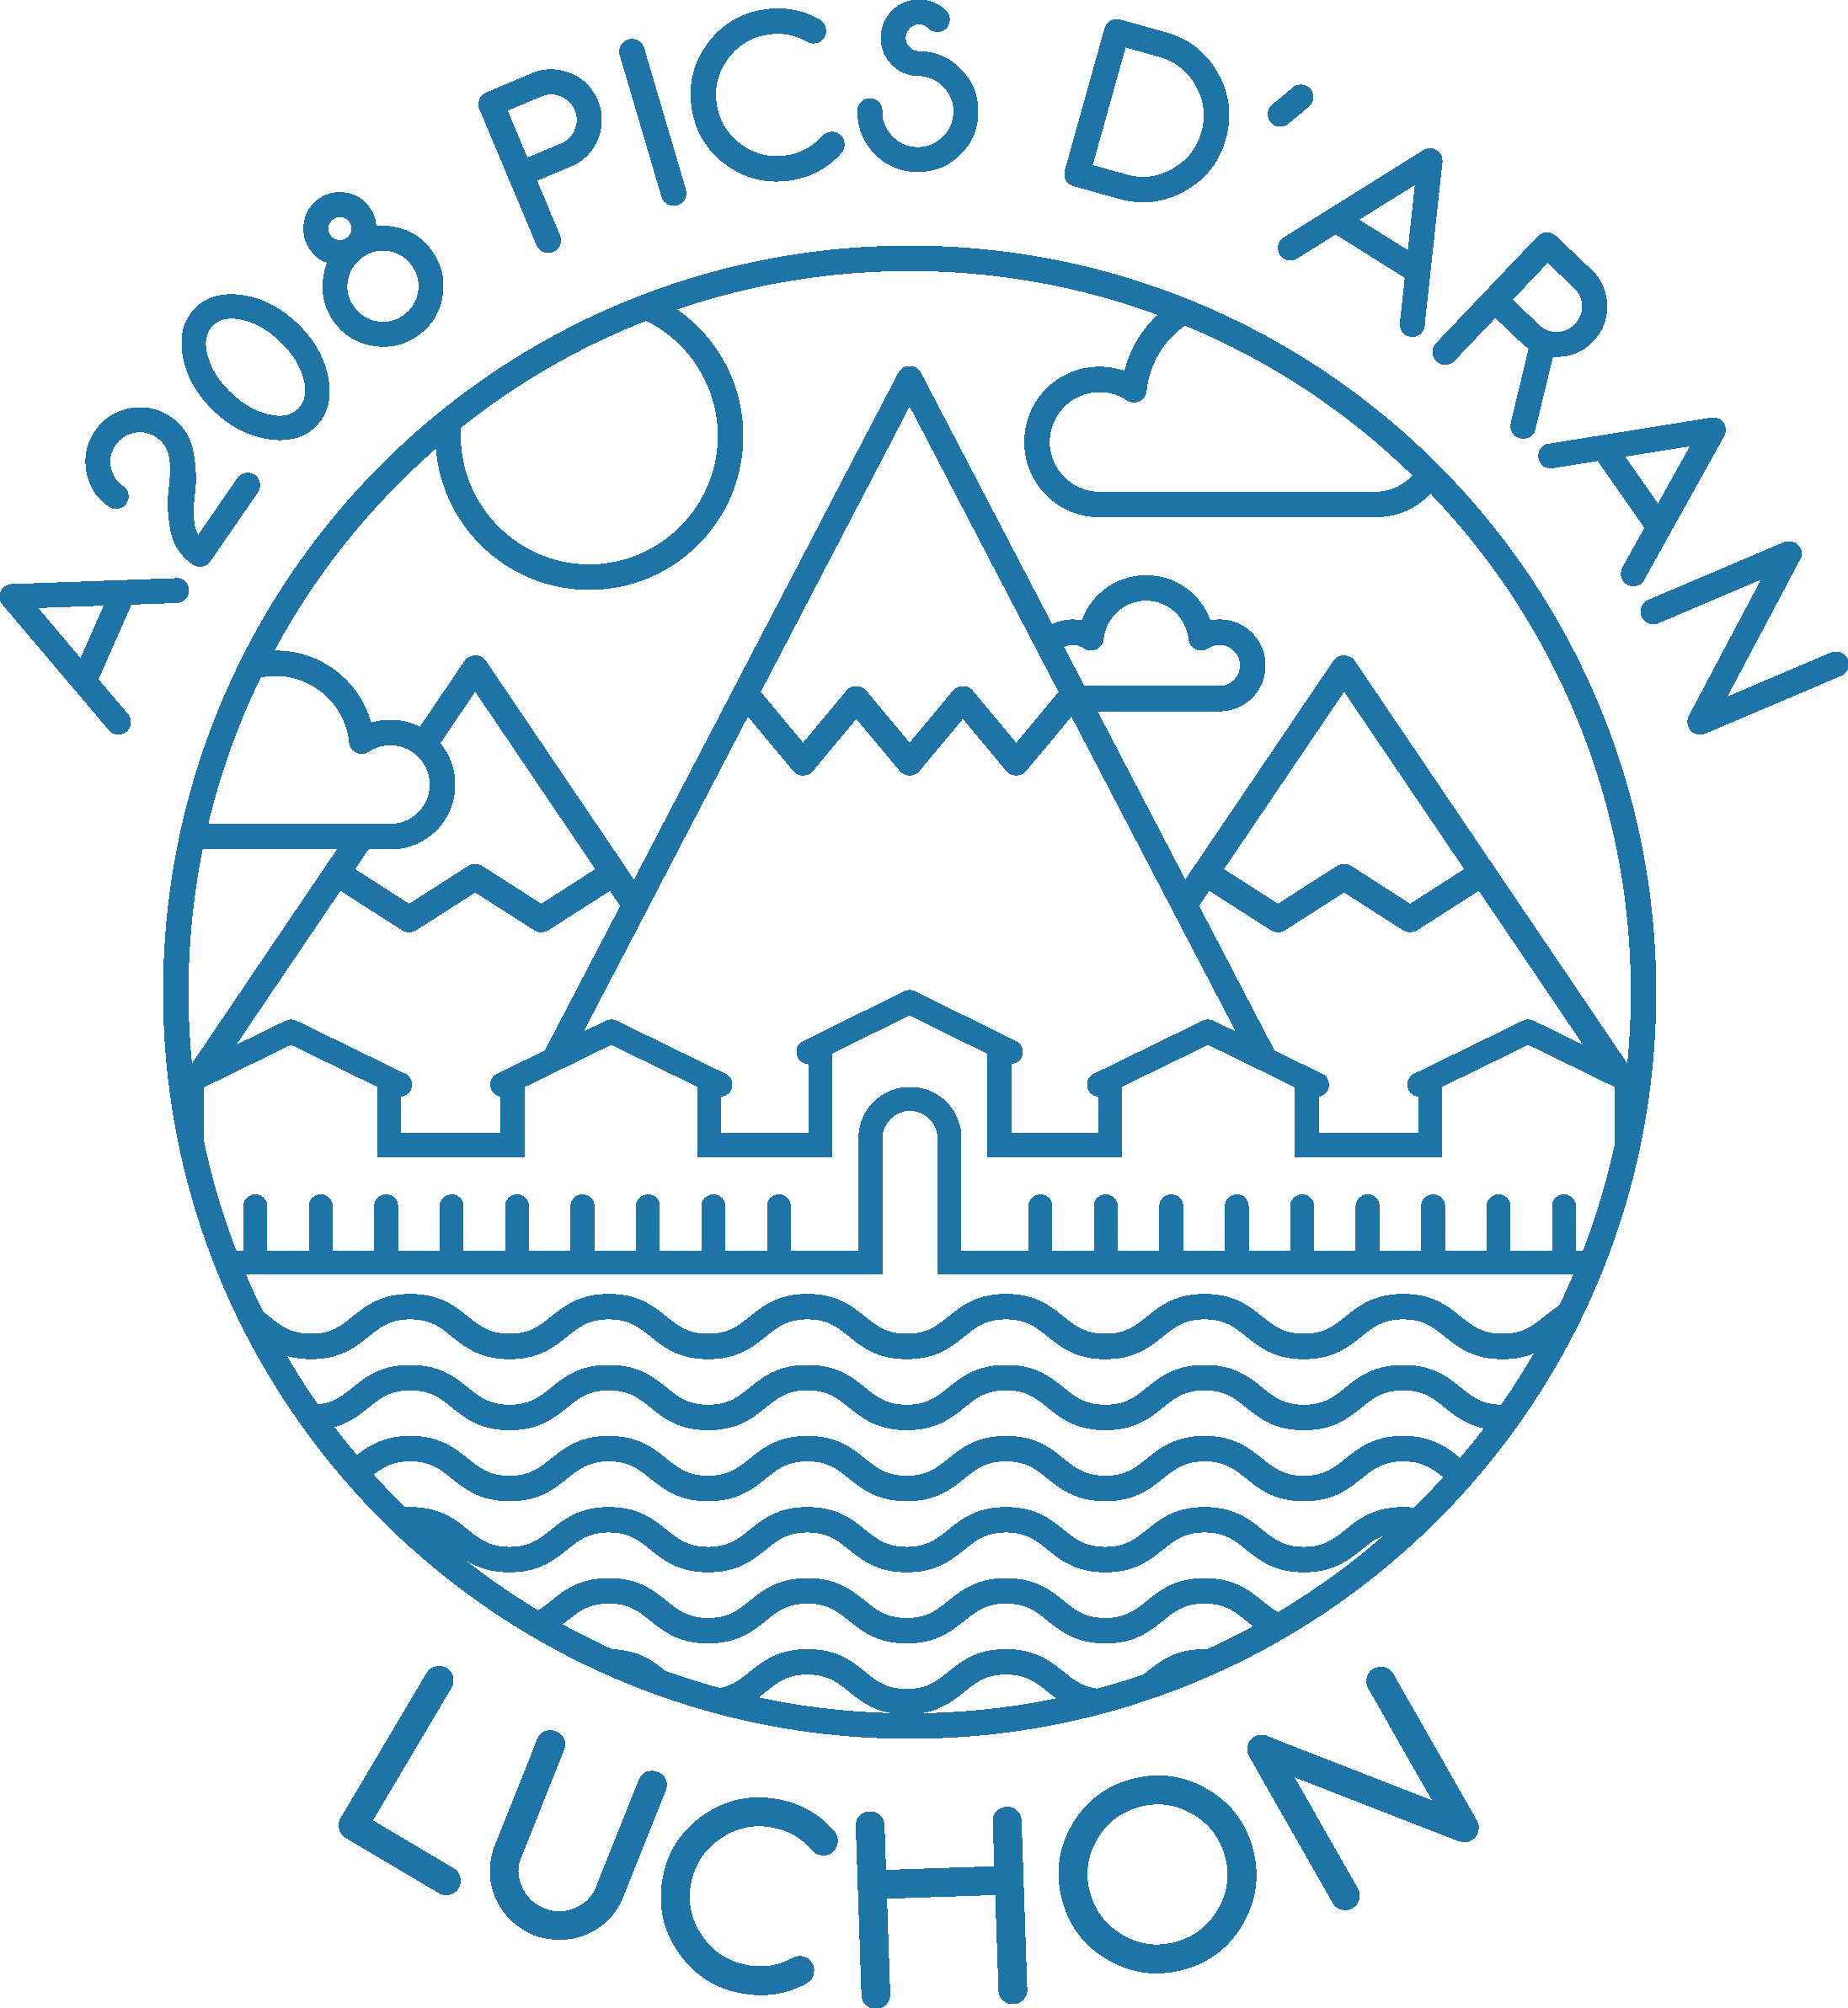 Logo thermes montagne pour l'appartement A208 résidence des pics d'Aran à LUCHON